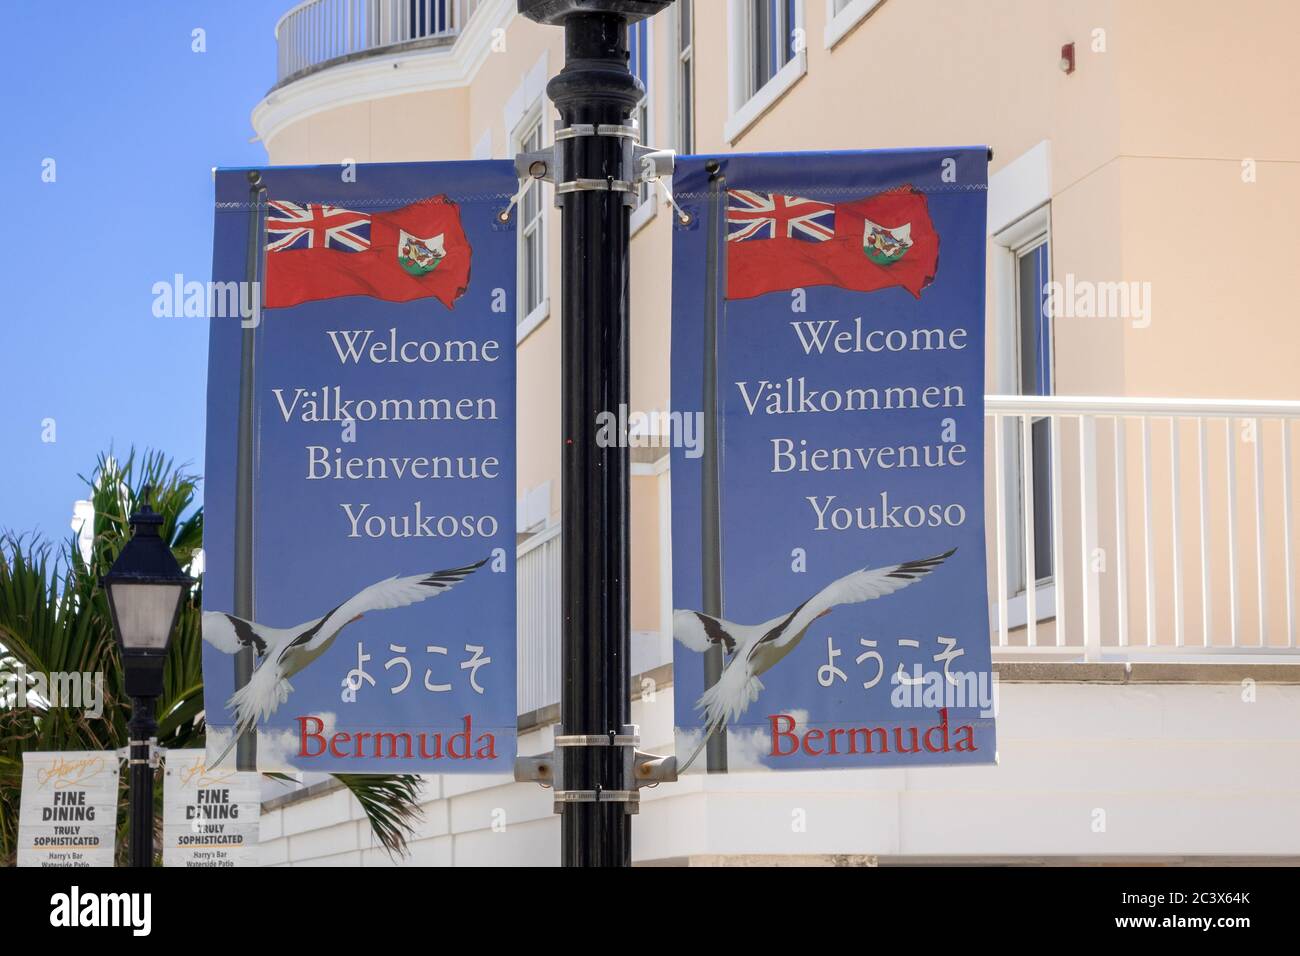 Bannières sur les lampadaire à Hamilton Bermudes Bienvenue aux Bermudes Signez des drapeaux dans plusieurs langues internationales Banque D'Images